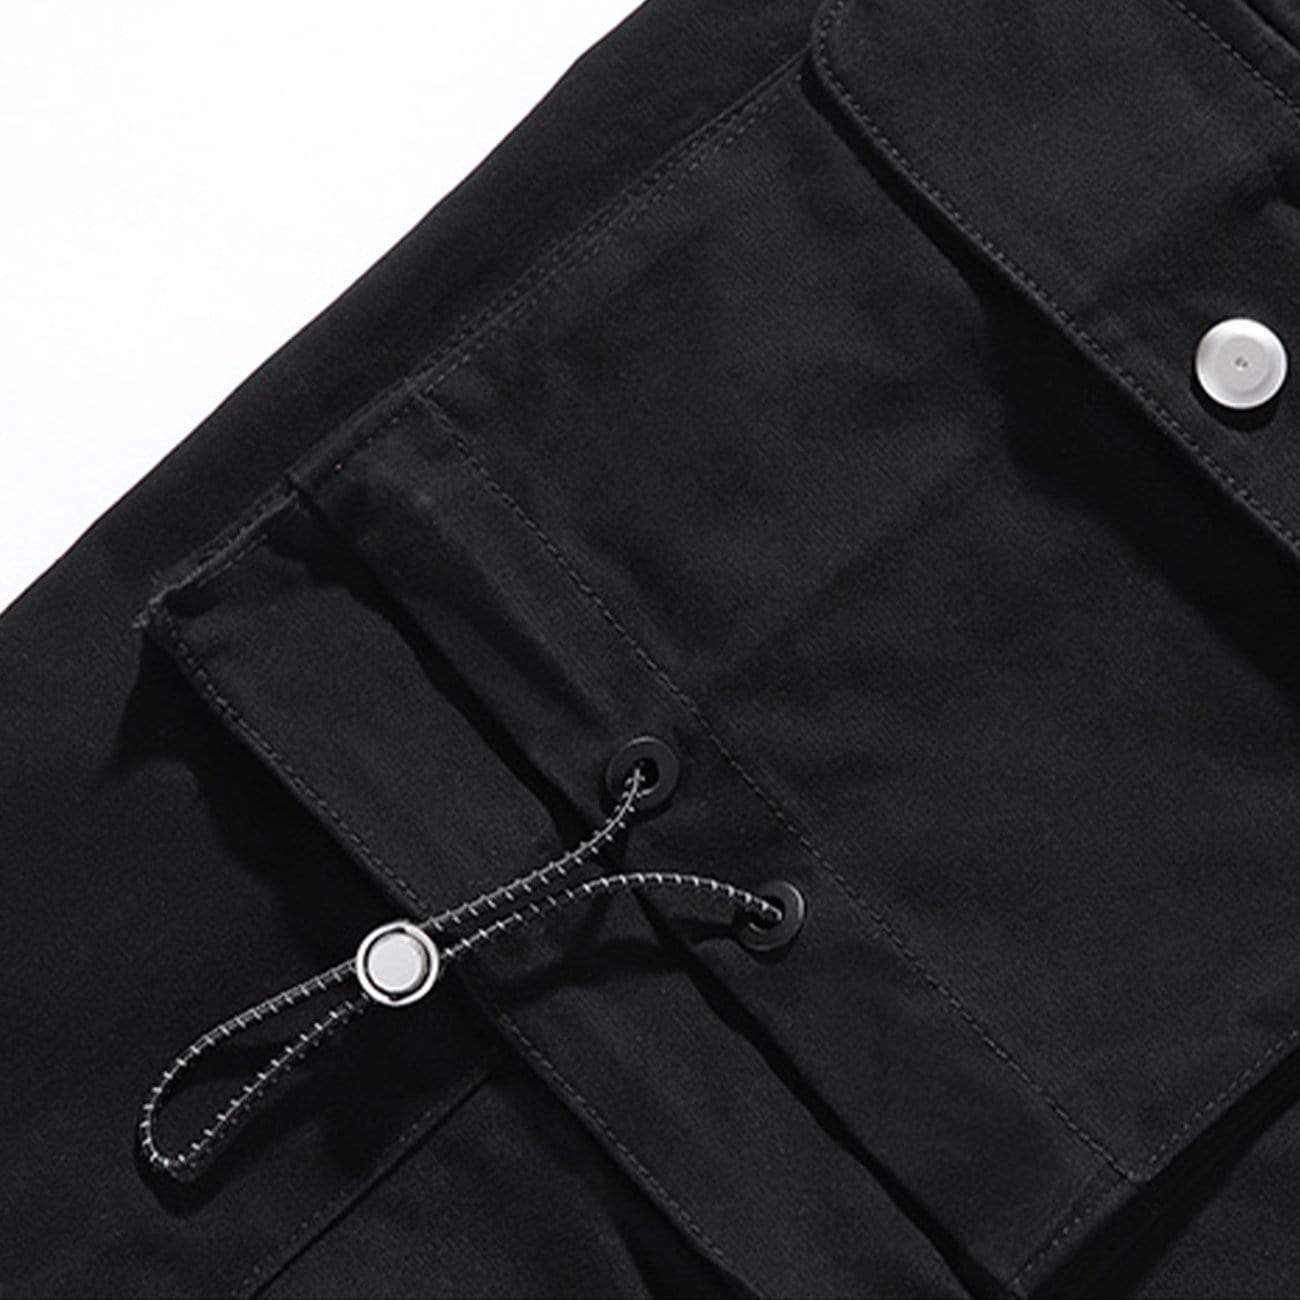 WLS Three-dimensional Zipper Pockets Cargo Pants